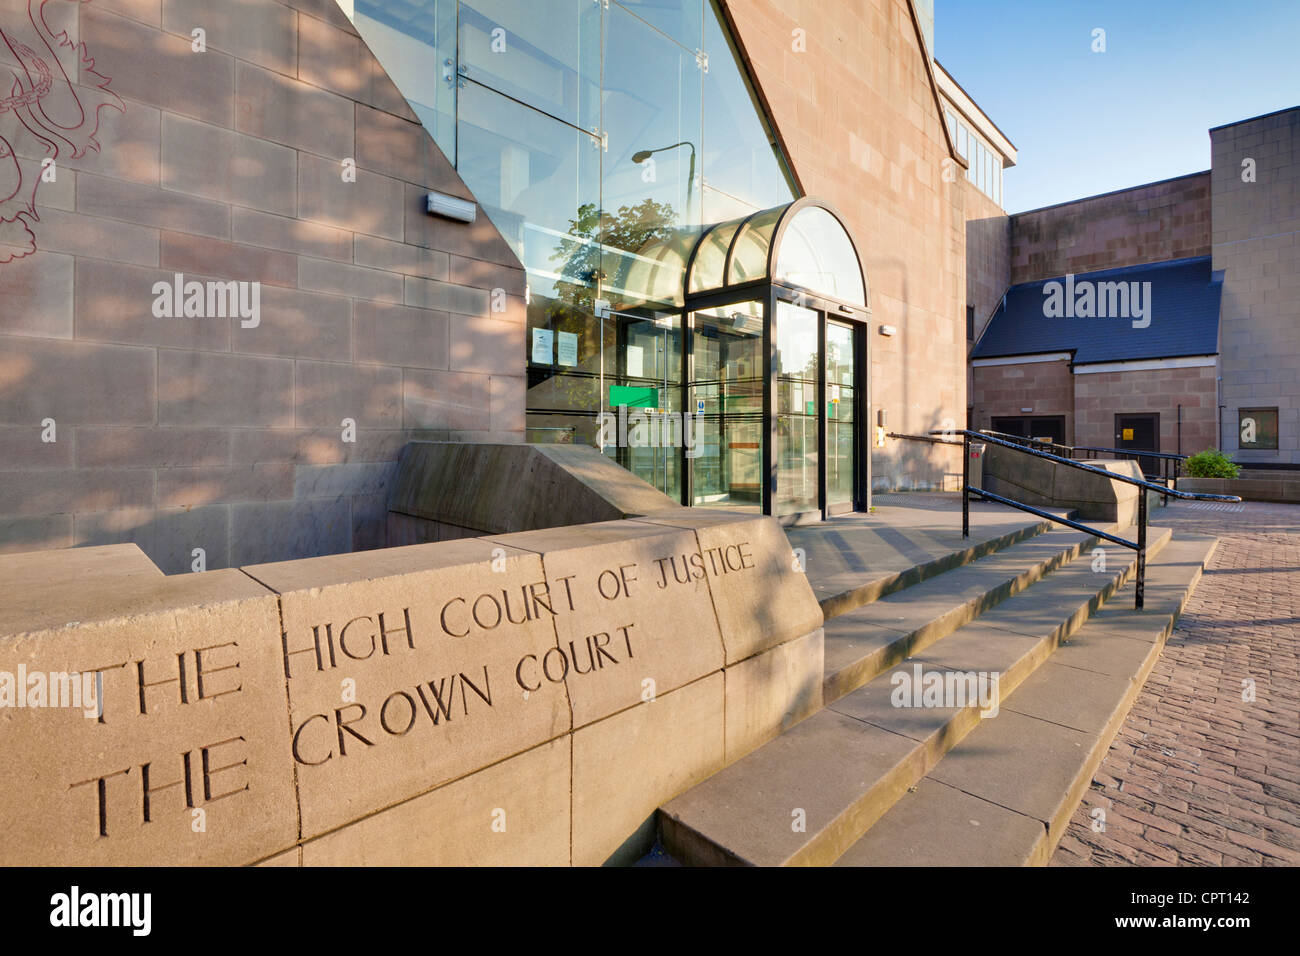 Le tribunal de la couronne centre-ville de Nottingham Nottinghamshire England UK GB EU Europe Banque D'Images